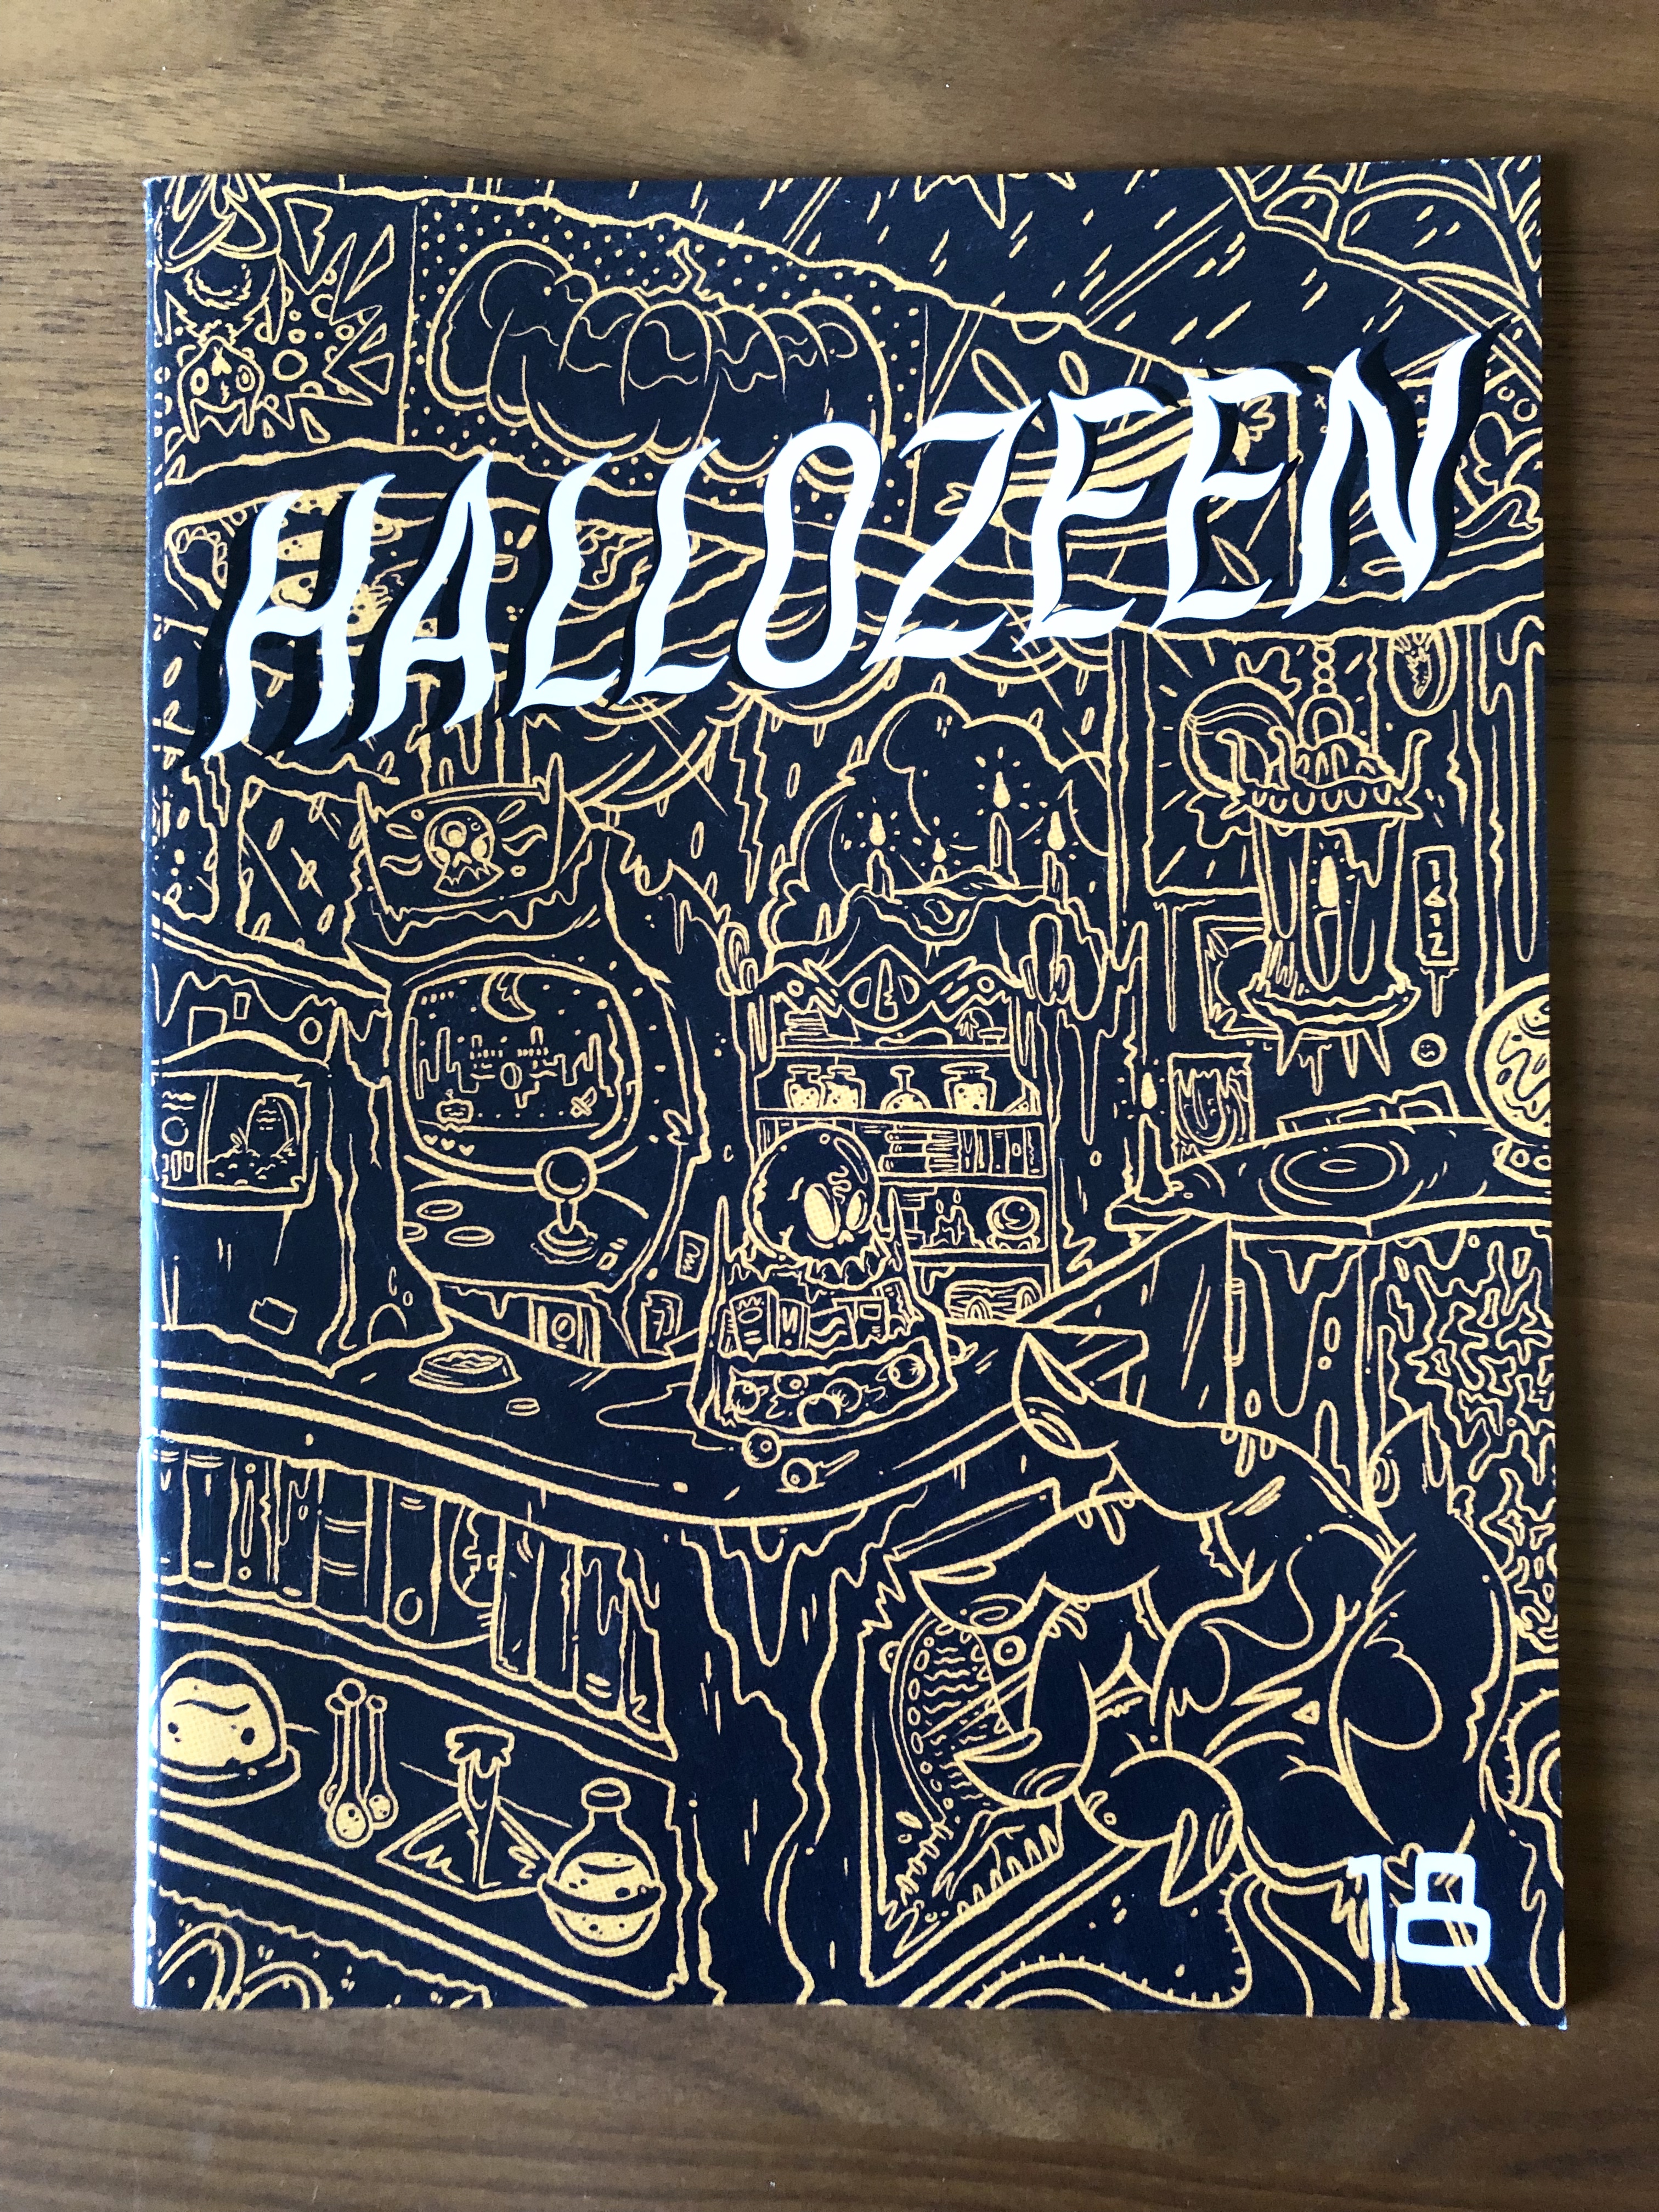 The cover of Hallozeen